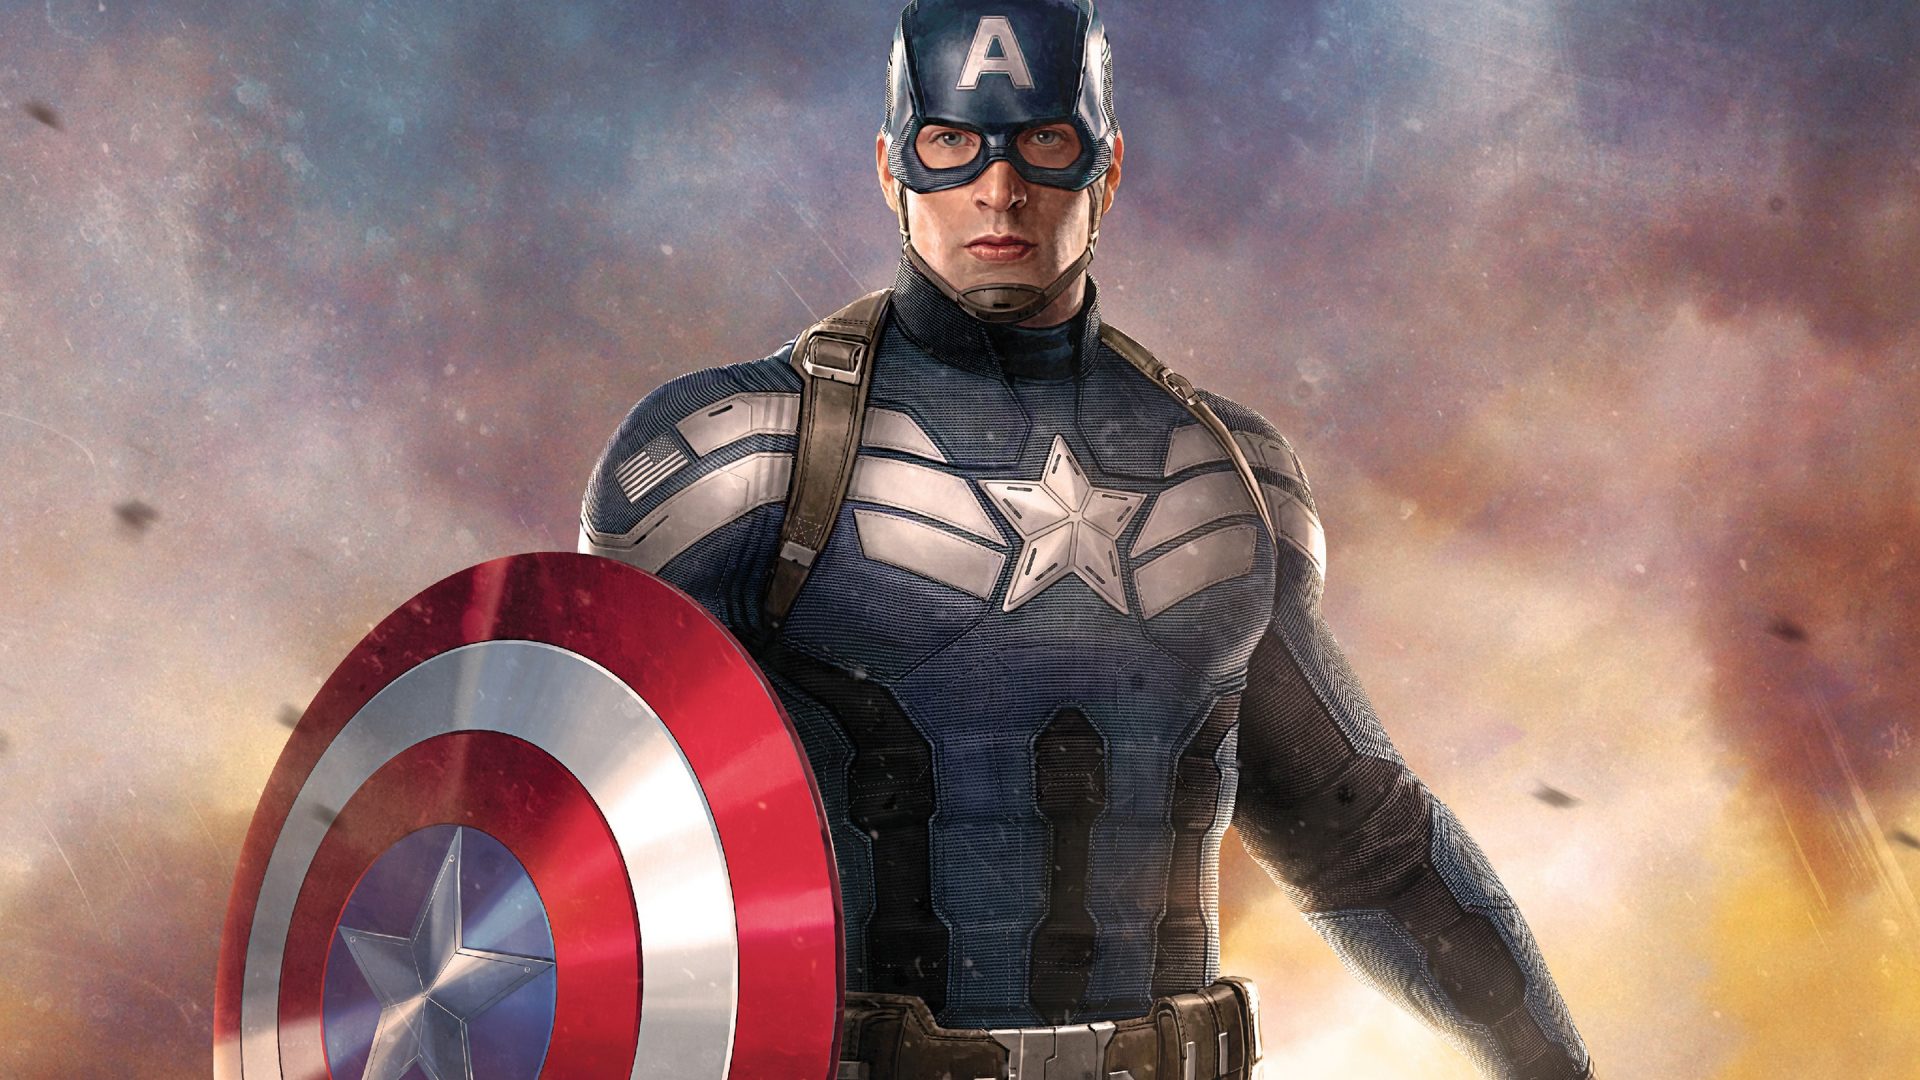 キャプテン・アメリカhd壁紙for mobile,スーパーヒーロー,架空の人物,キャプテン・アメリカ,映画,ヒーロー